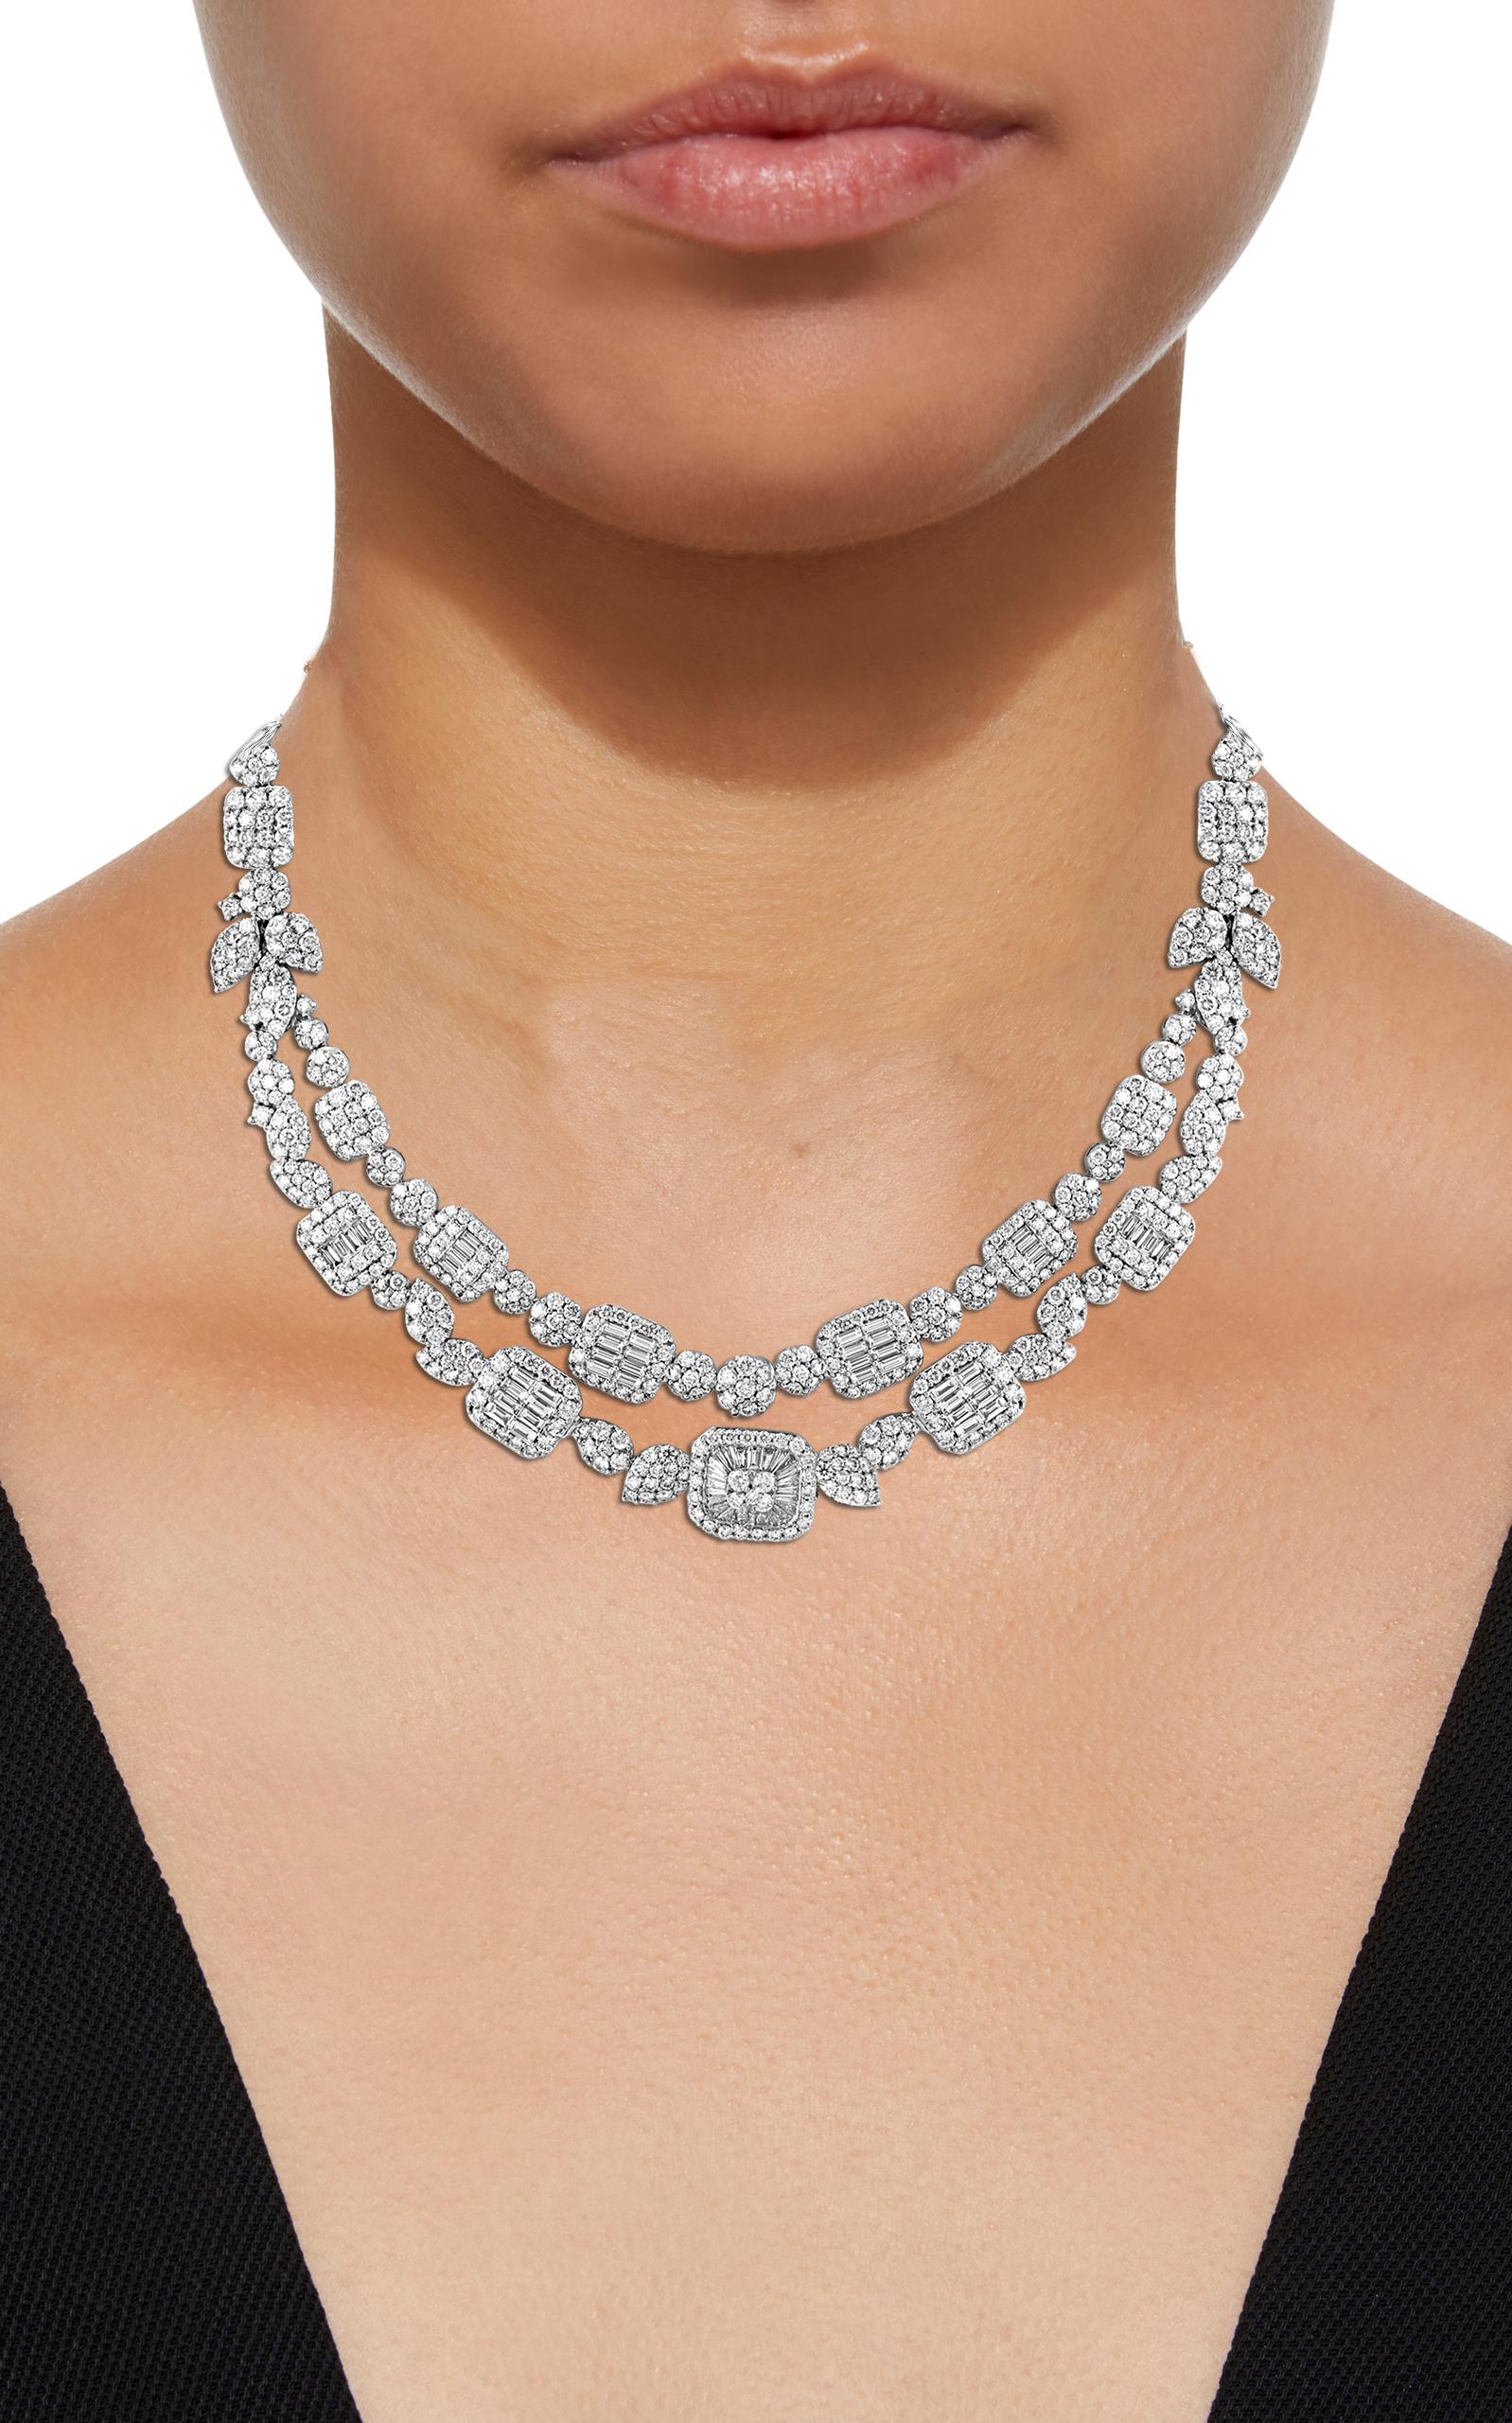 18 Carats VS E Quality Diamond 18 Karat White Gold Necklace Bridal Brand New Pour femmes en vente